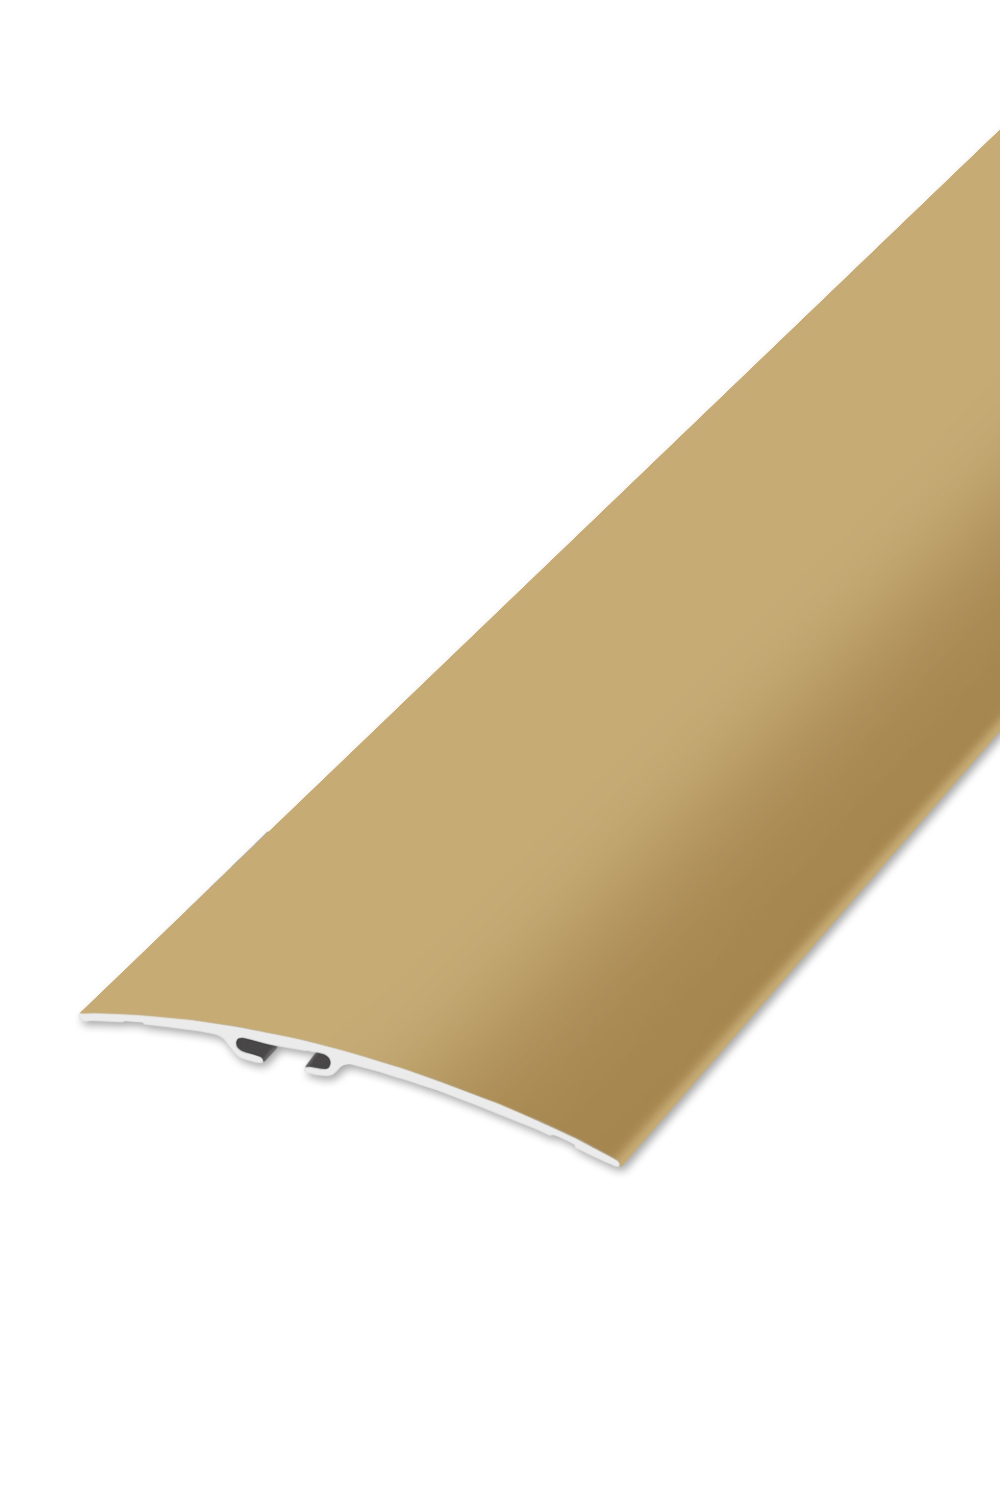 Přechodová lišta STANDARD 80 - Zlatá 270 cm